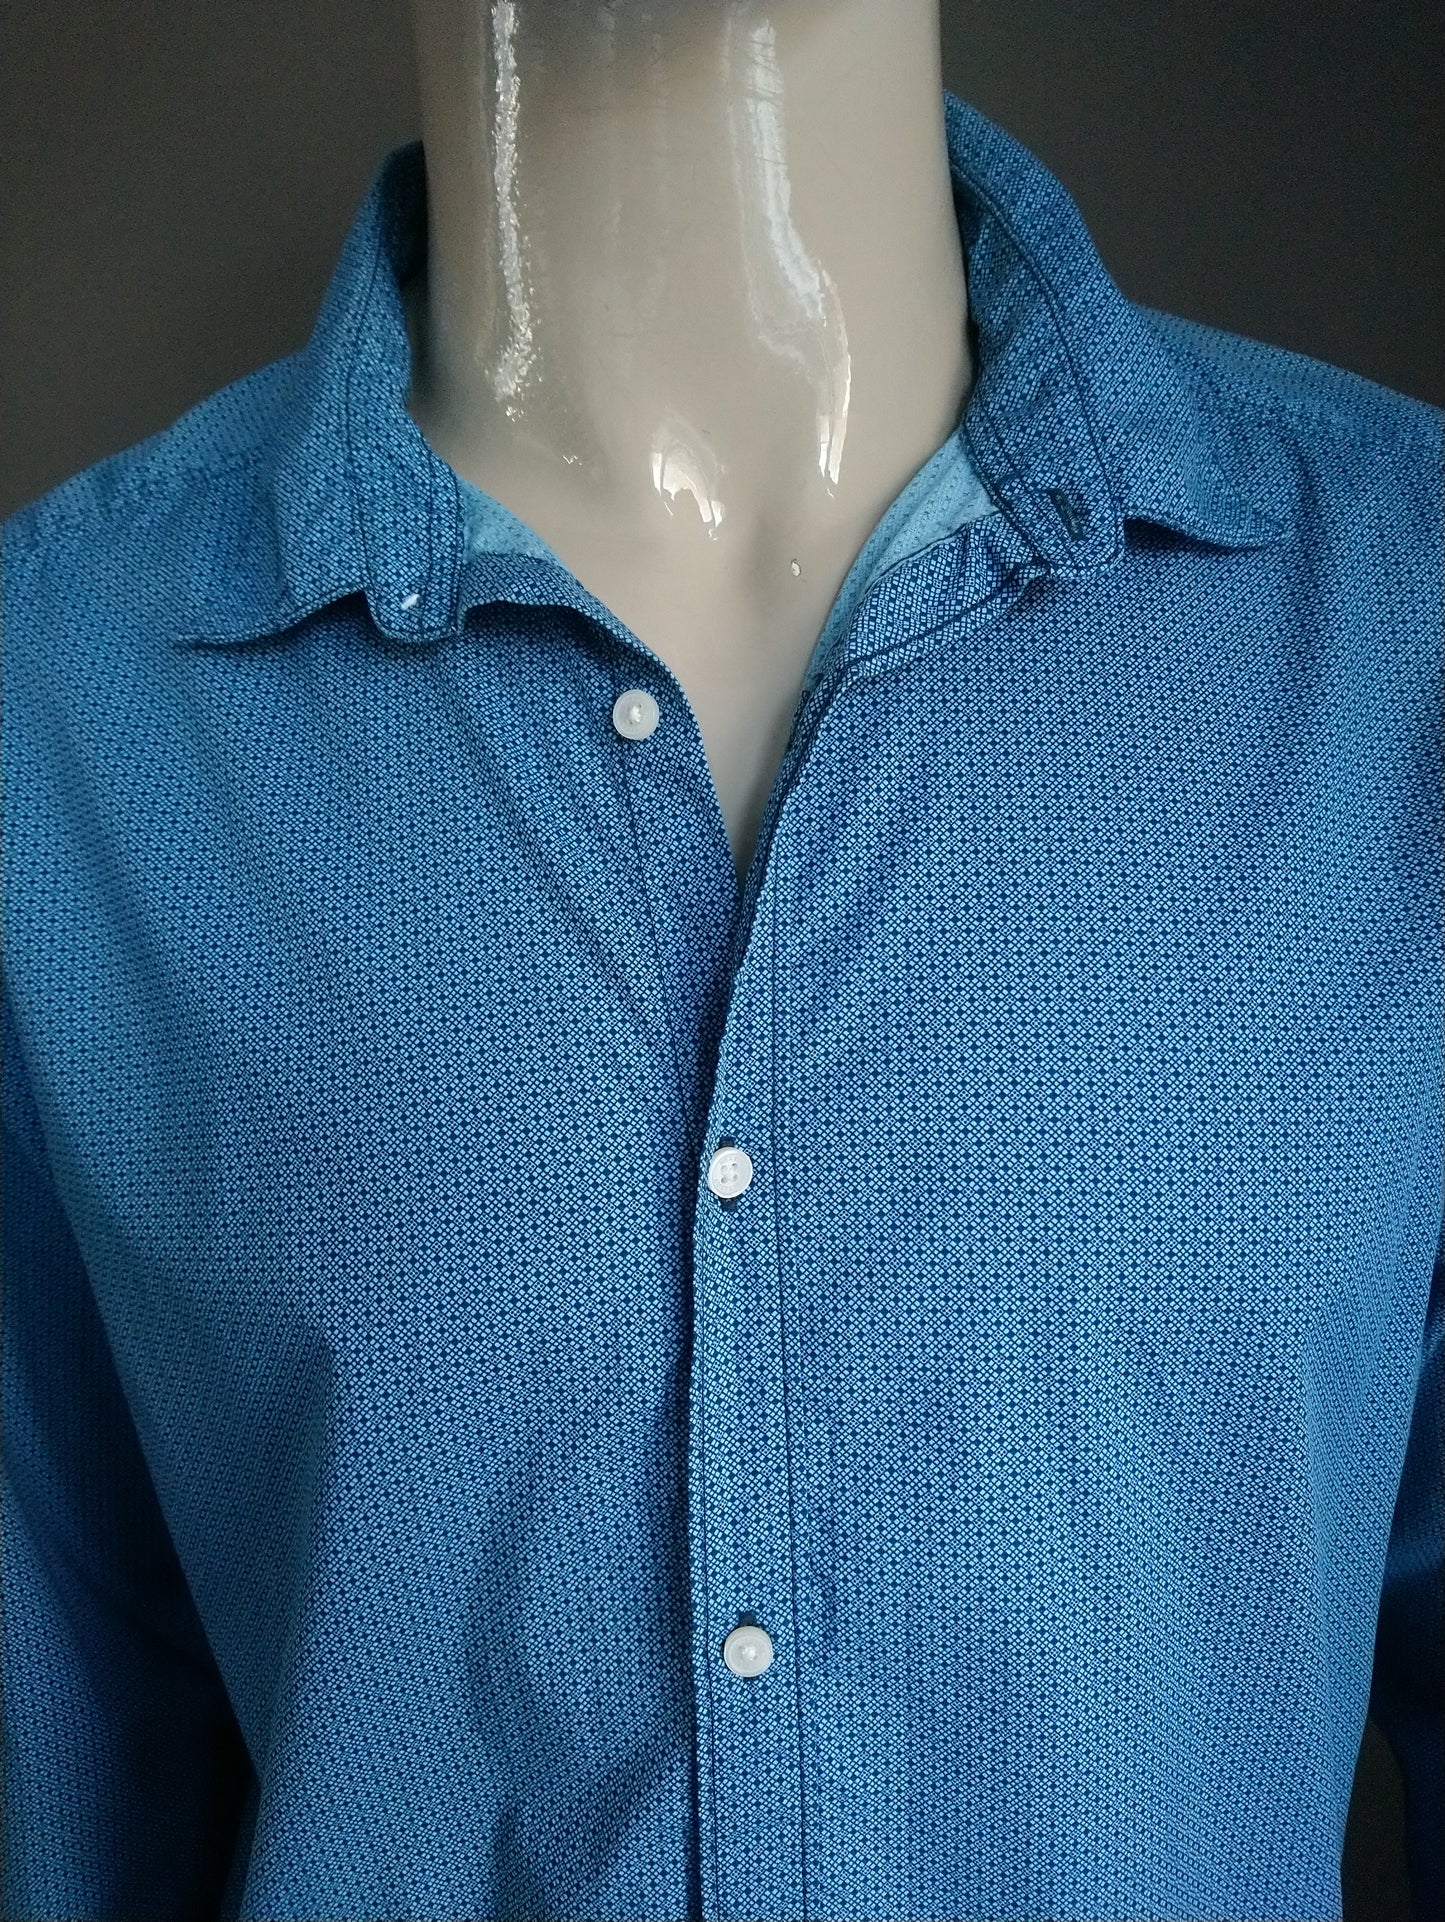 Mexx shirt. Green blue print. Size XXL / 2XL. Slim fit.